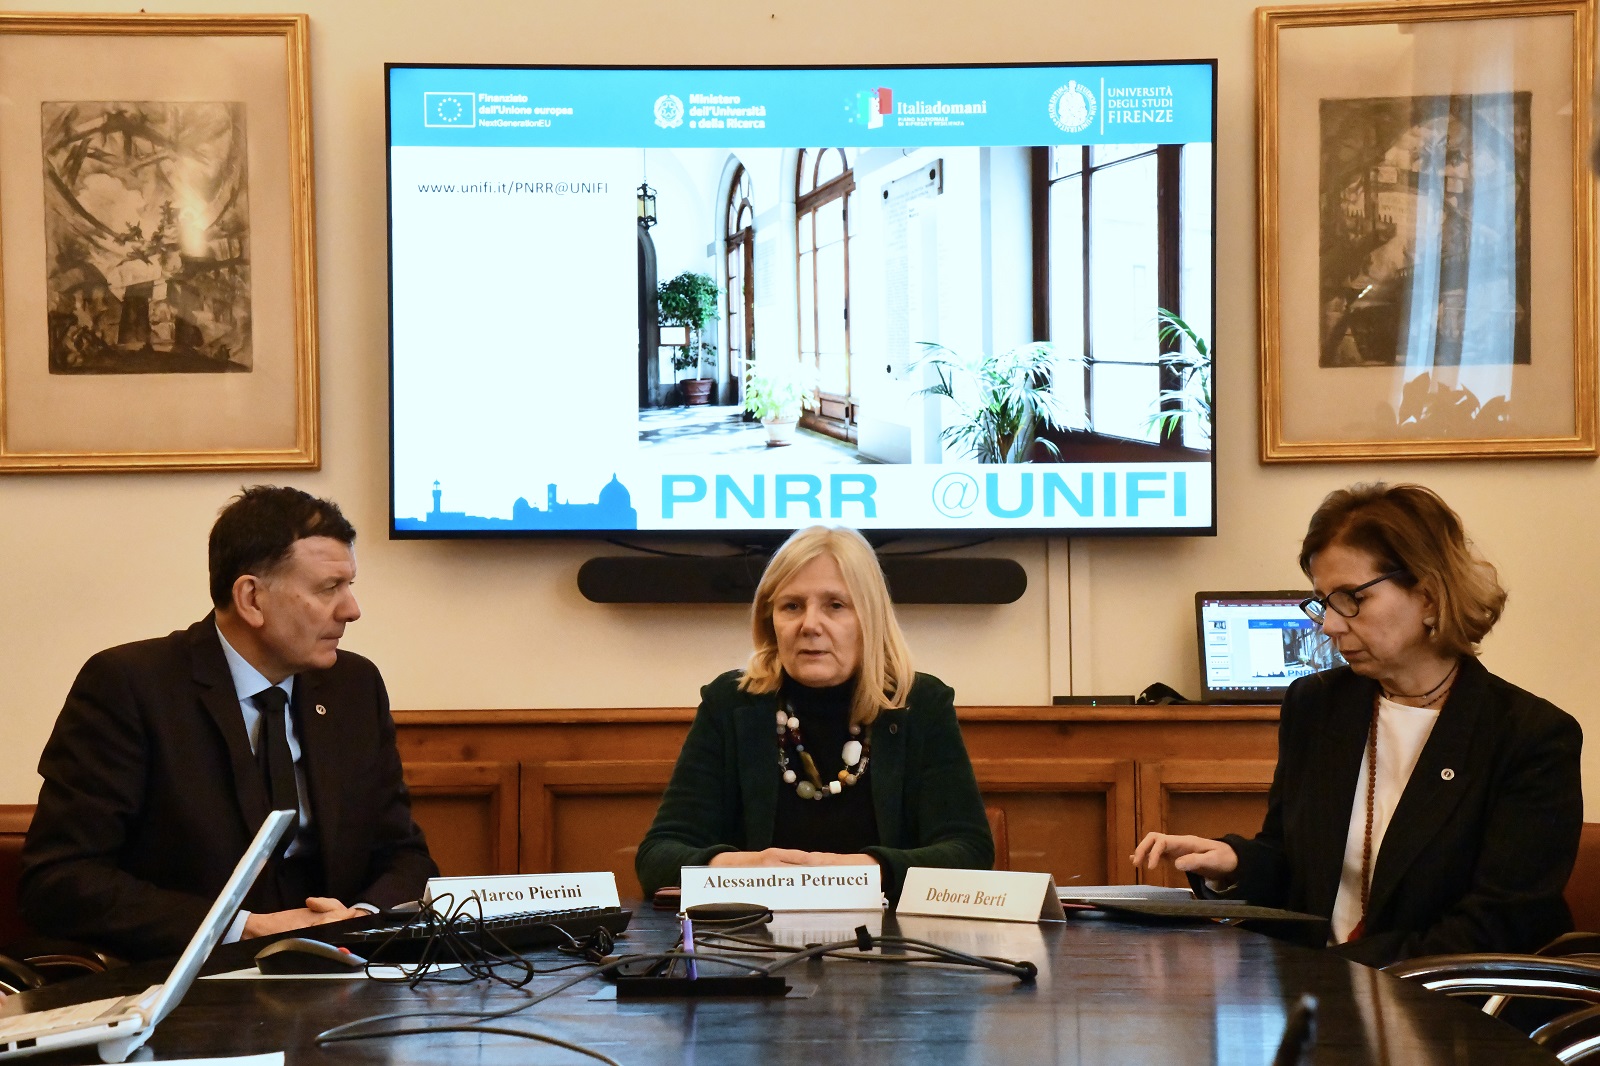 Marco Pierini, Alessandra Petrucci e Debora Berti in un momento della conferenza stampa (Fonte foto Università degli Studi di Firenze)